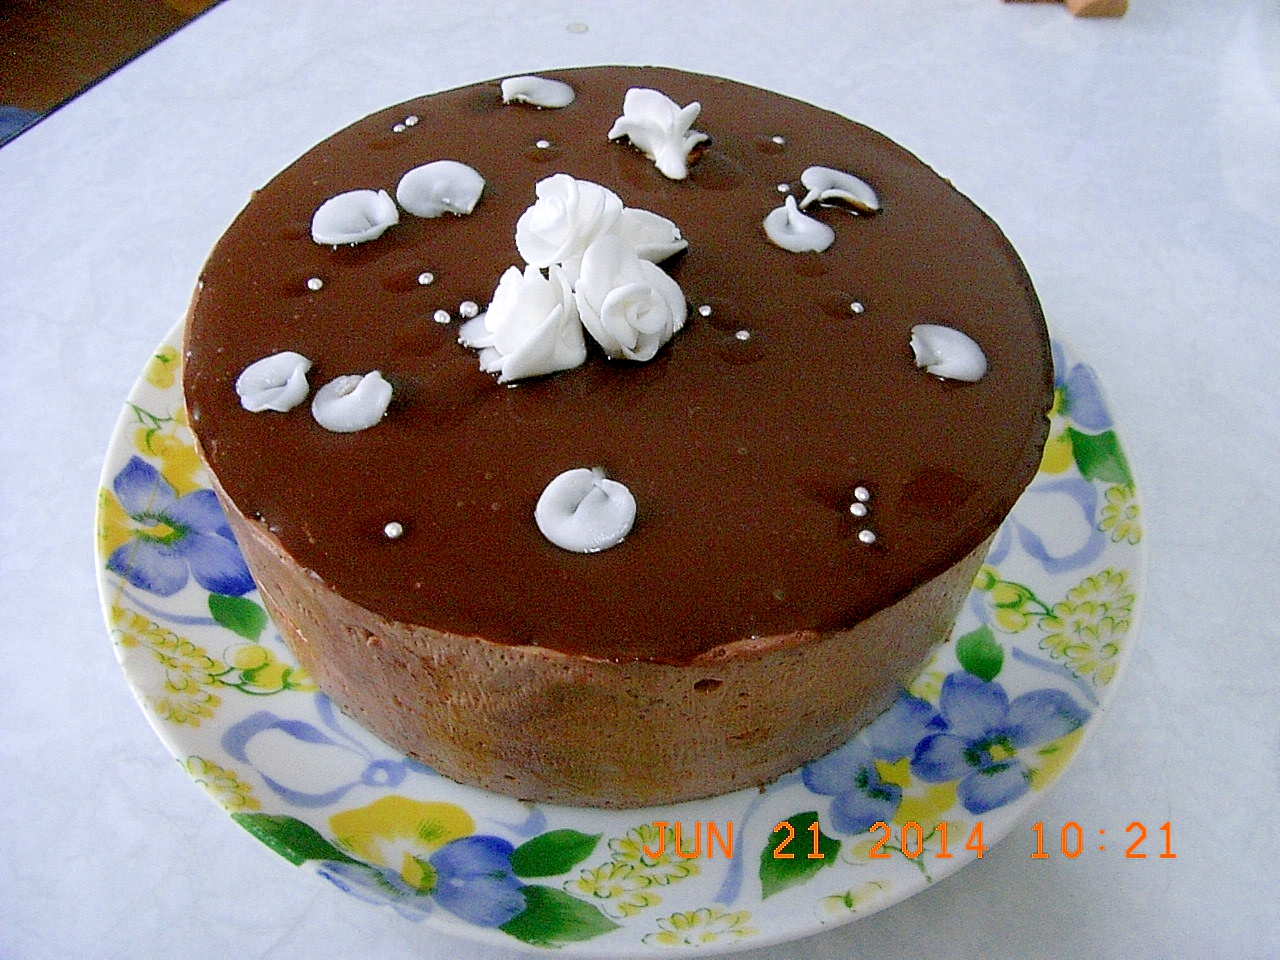 ラズベリー風味のチョコレートケーキ